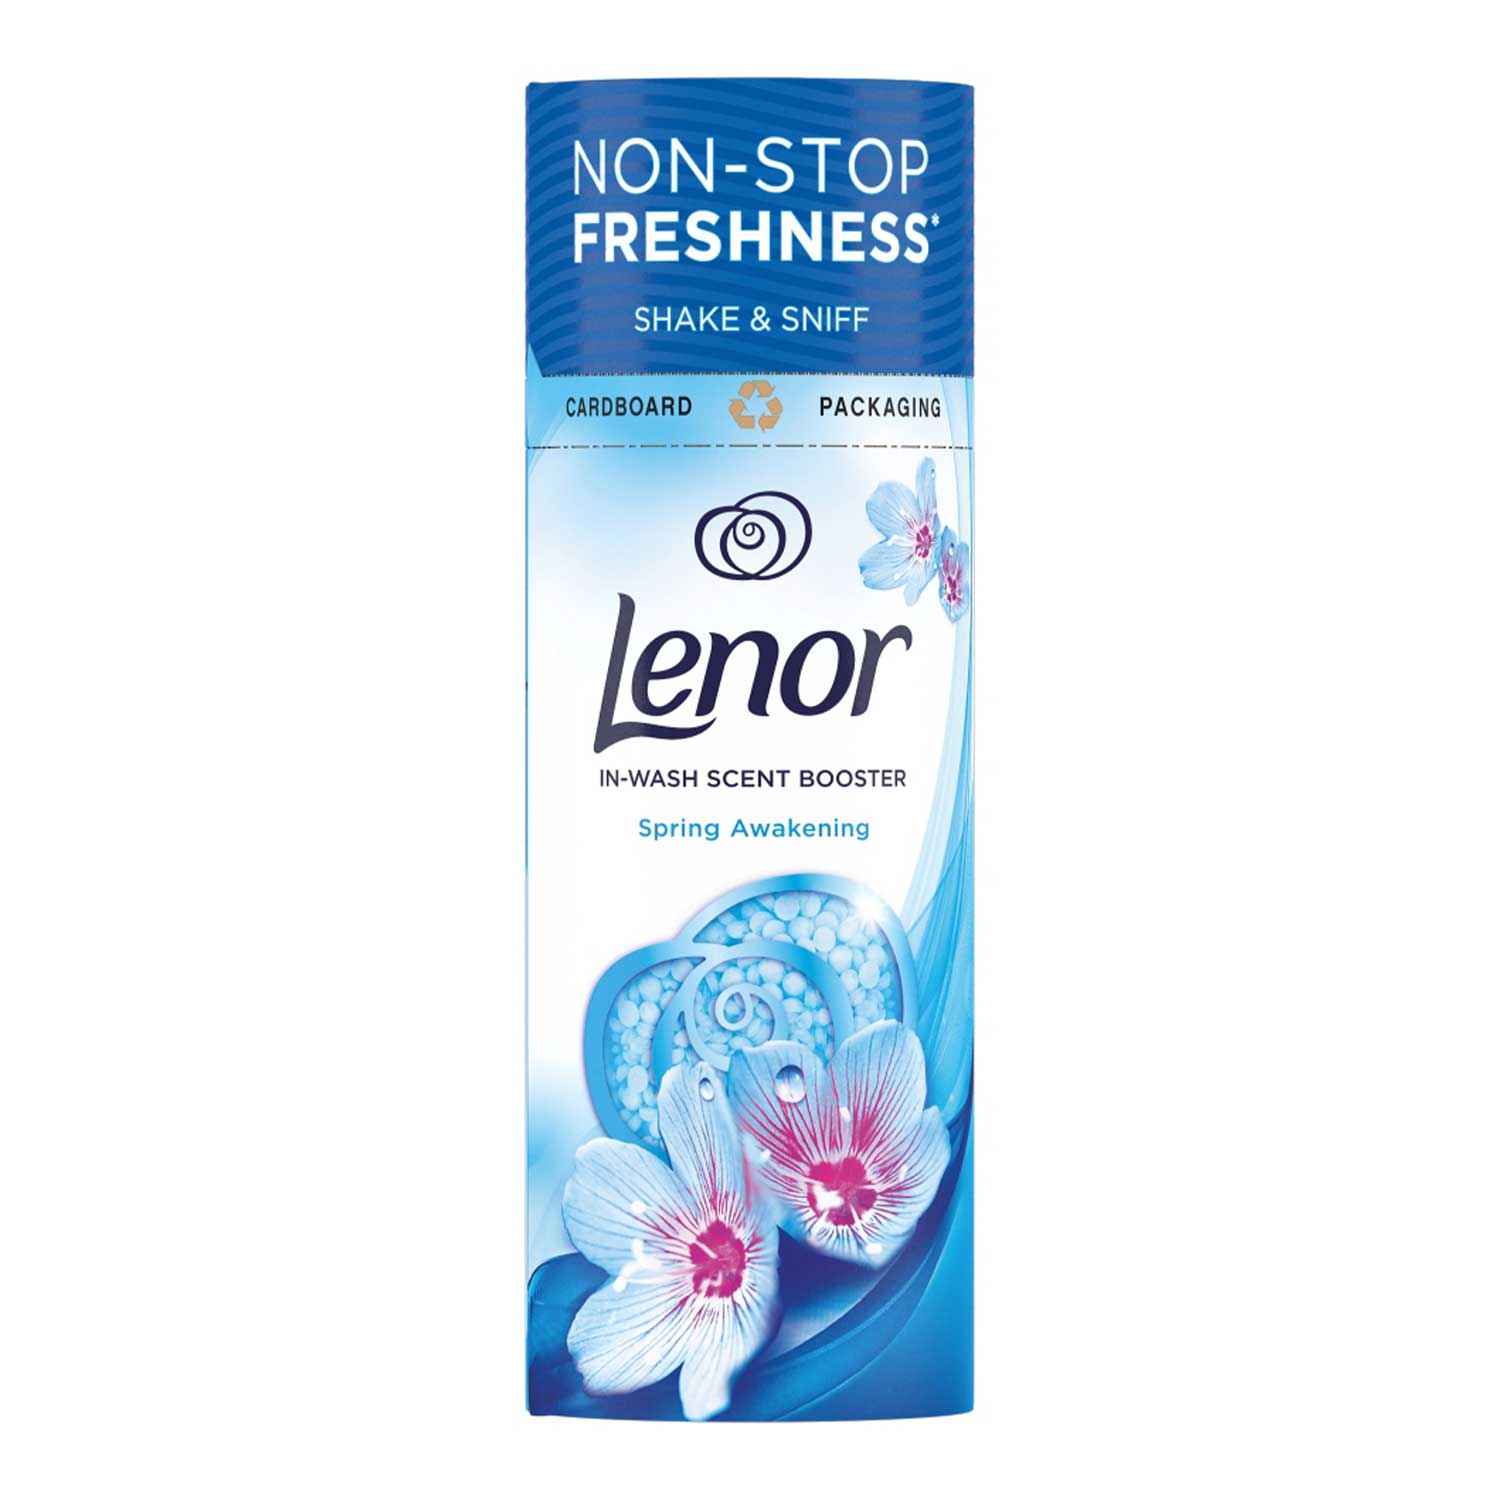 Lenor Unstoppables Fresh (176 g) - Storefront EN